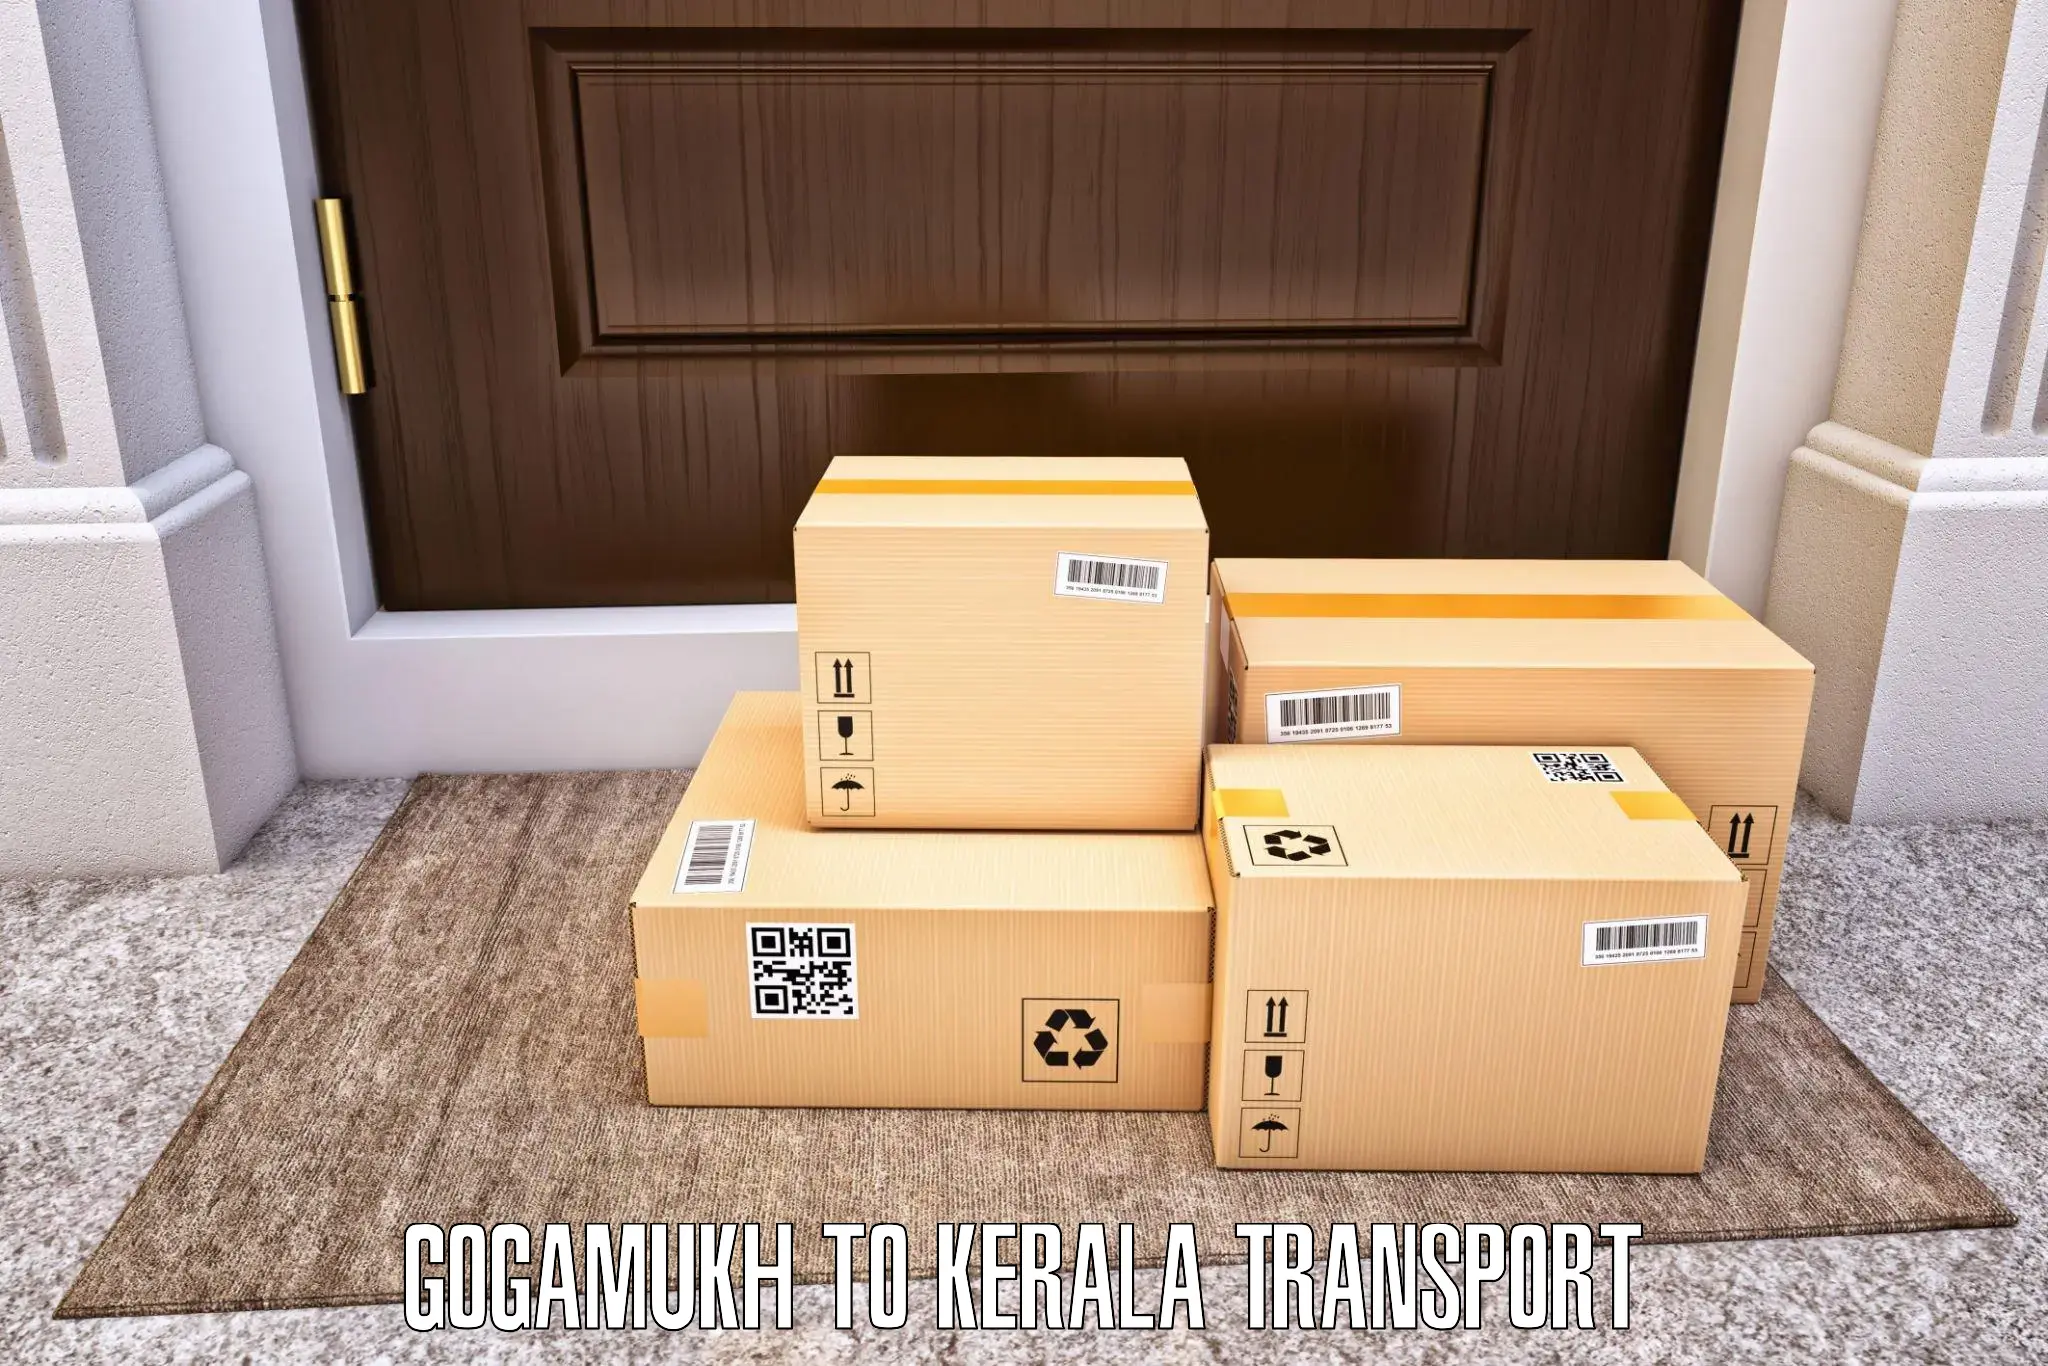 Vehicle transport services Gogamukh to Koyilandy